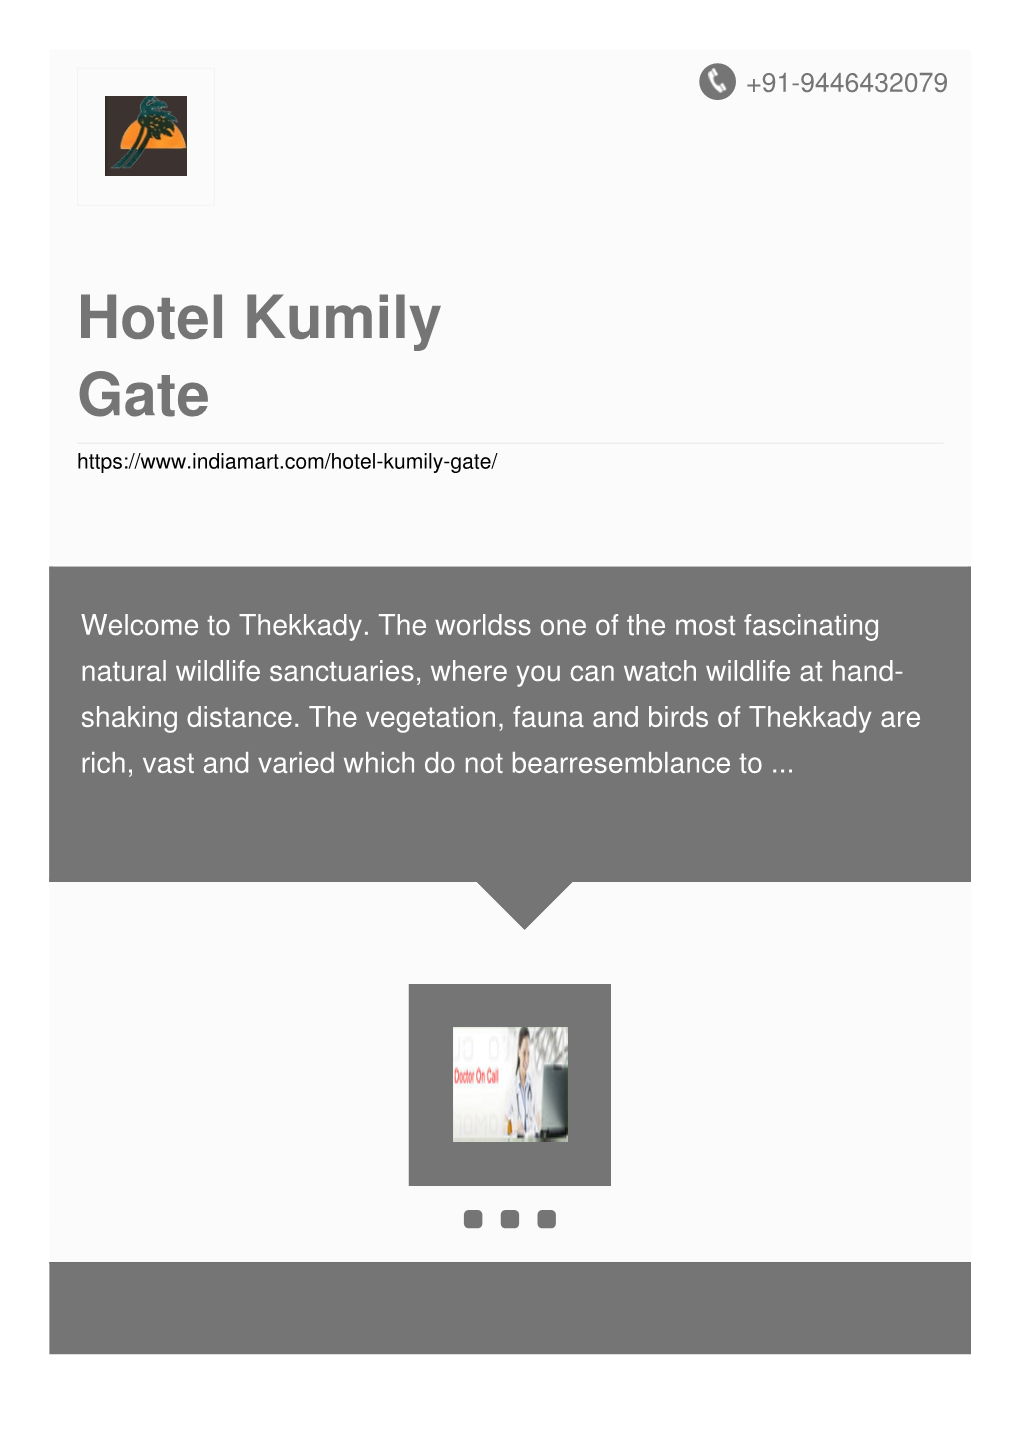 Hotel Kumily Gate